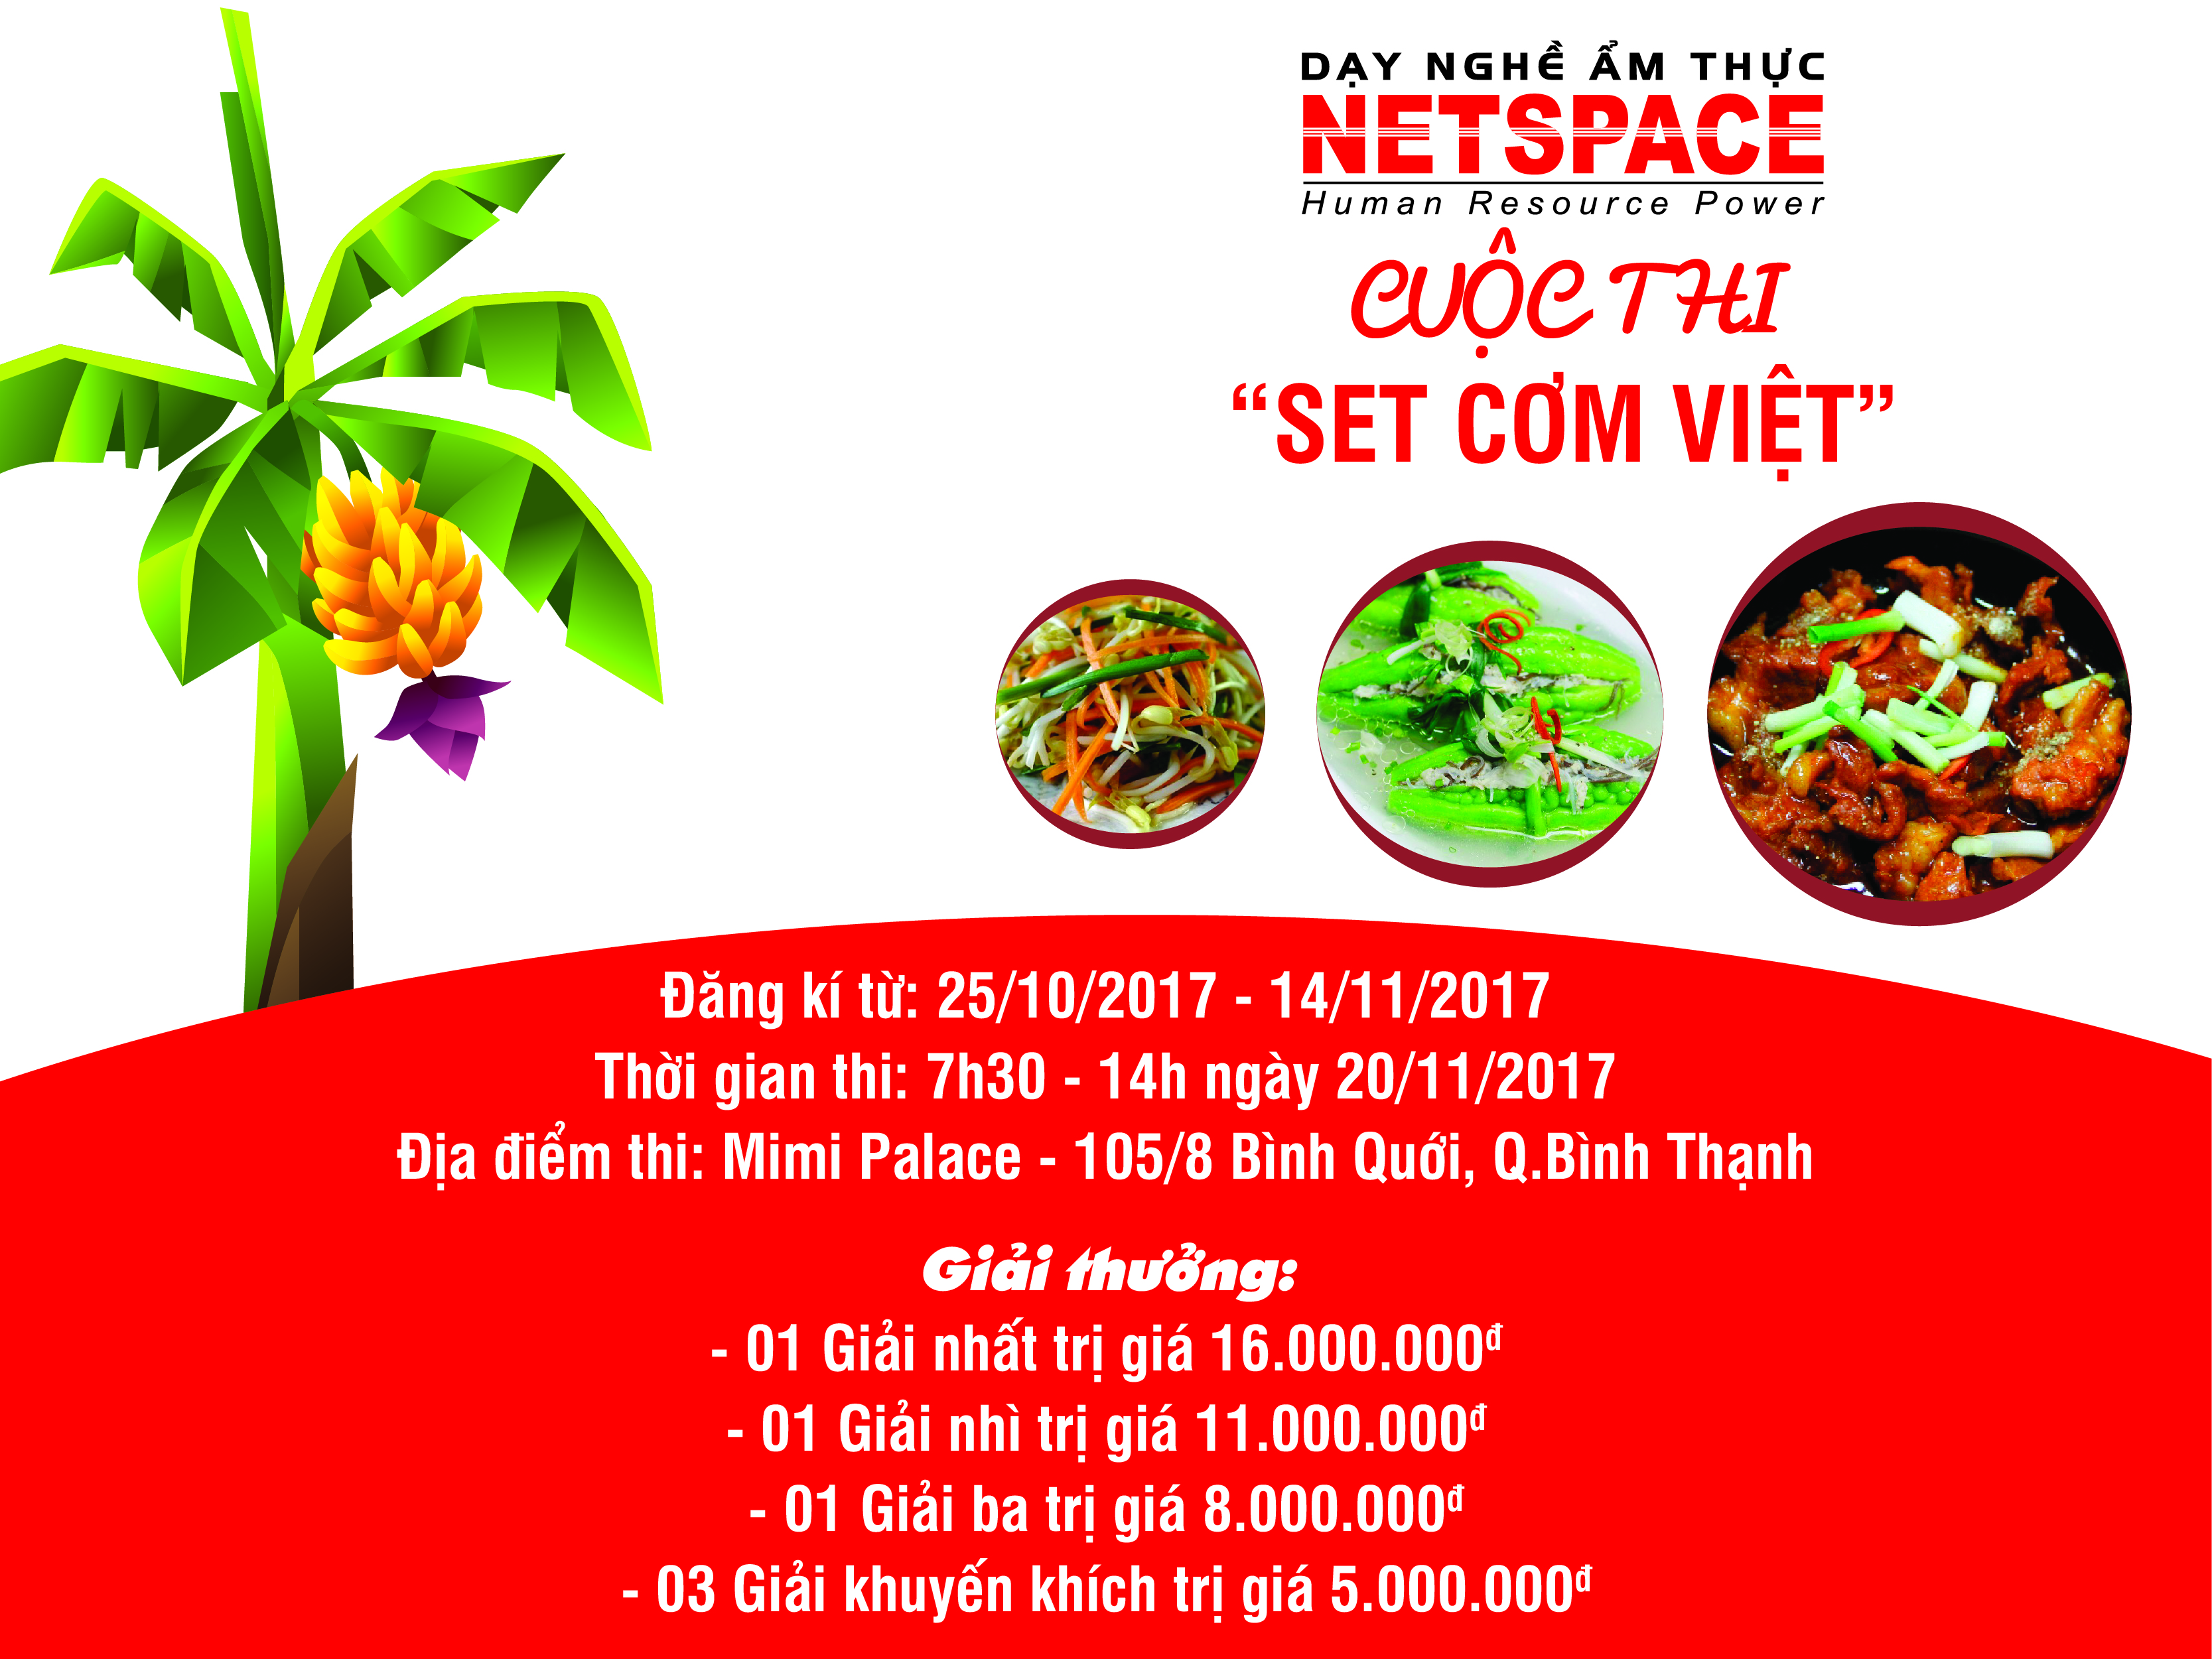 Netspace tổ chức lễ Kỷ niệm Ngày Nhà giáo Việt Nam 20-11 và cuộc thi “Set cơm Việt- lần 1 năm 2017”